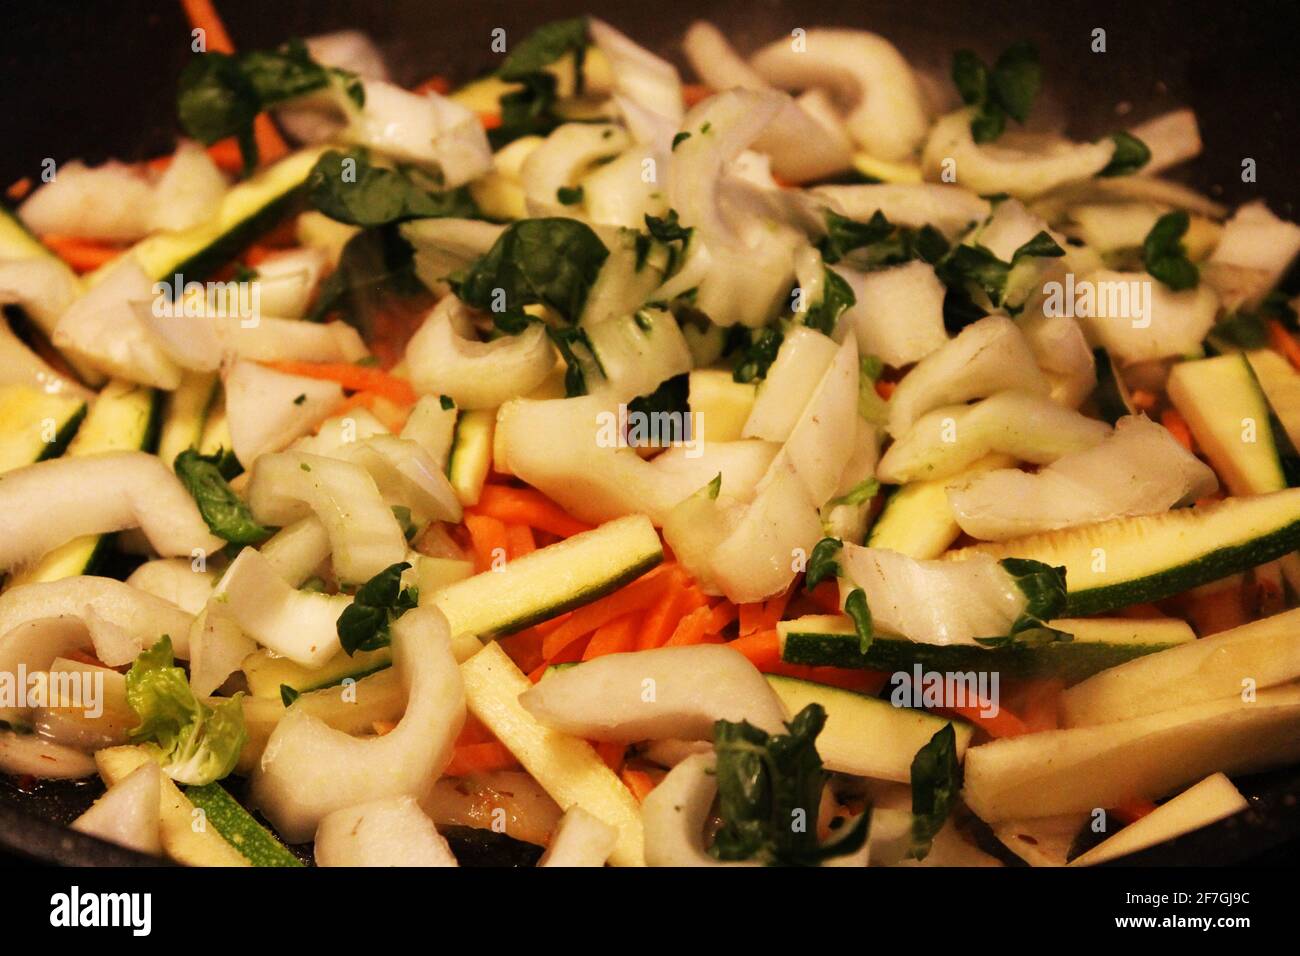 Gros plan d'une pile de légumes hachés, y compris la carotte, l'oignon, le bok choy, le céleri. Banque D'Images